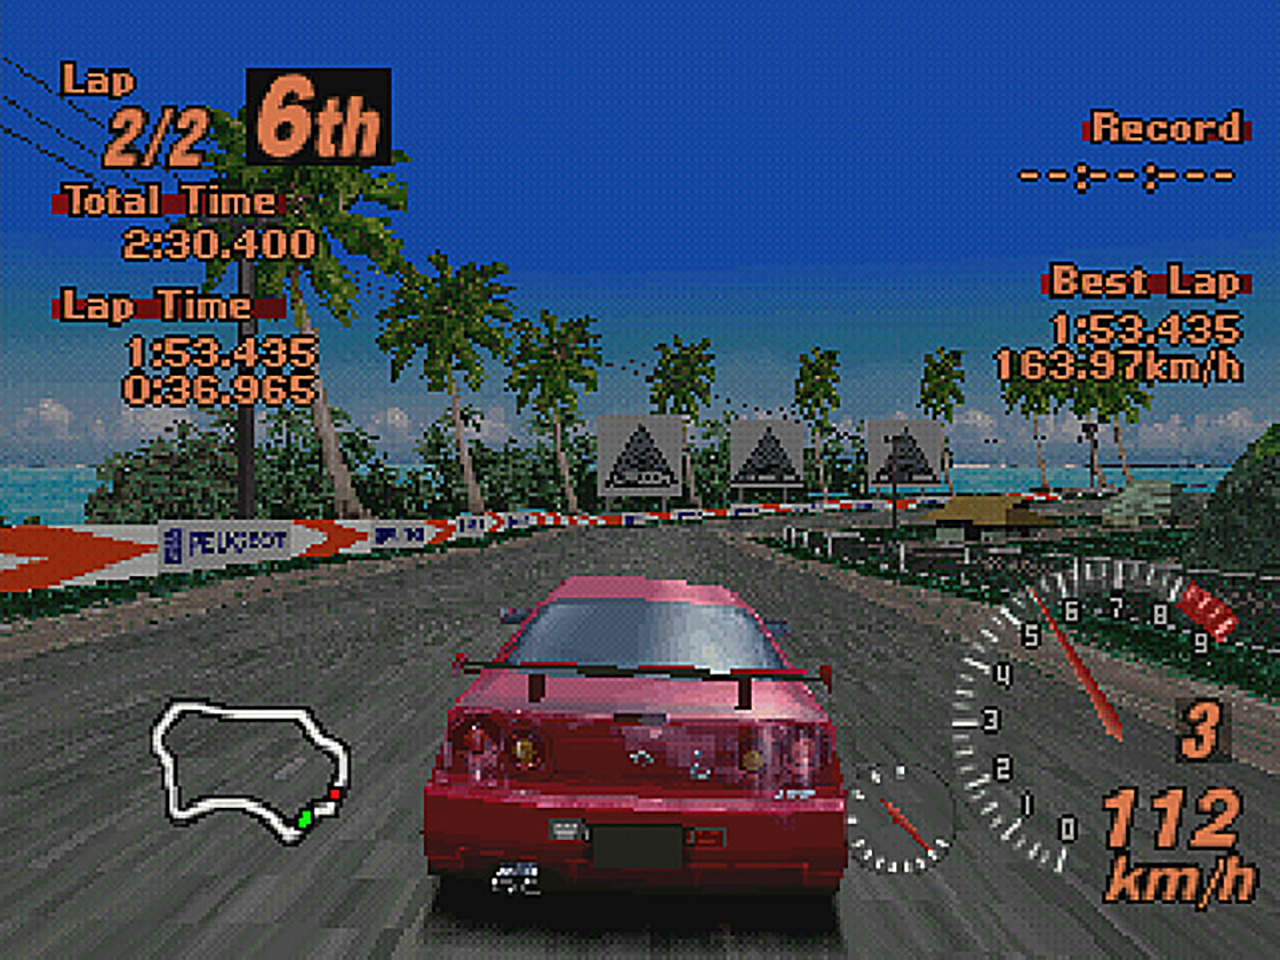 Gran Turismo 2 - グランツーリスモ・ドットコム